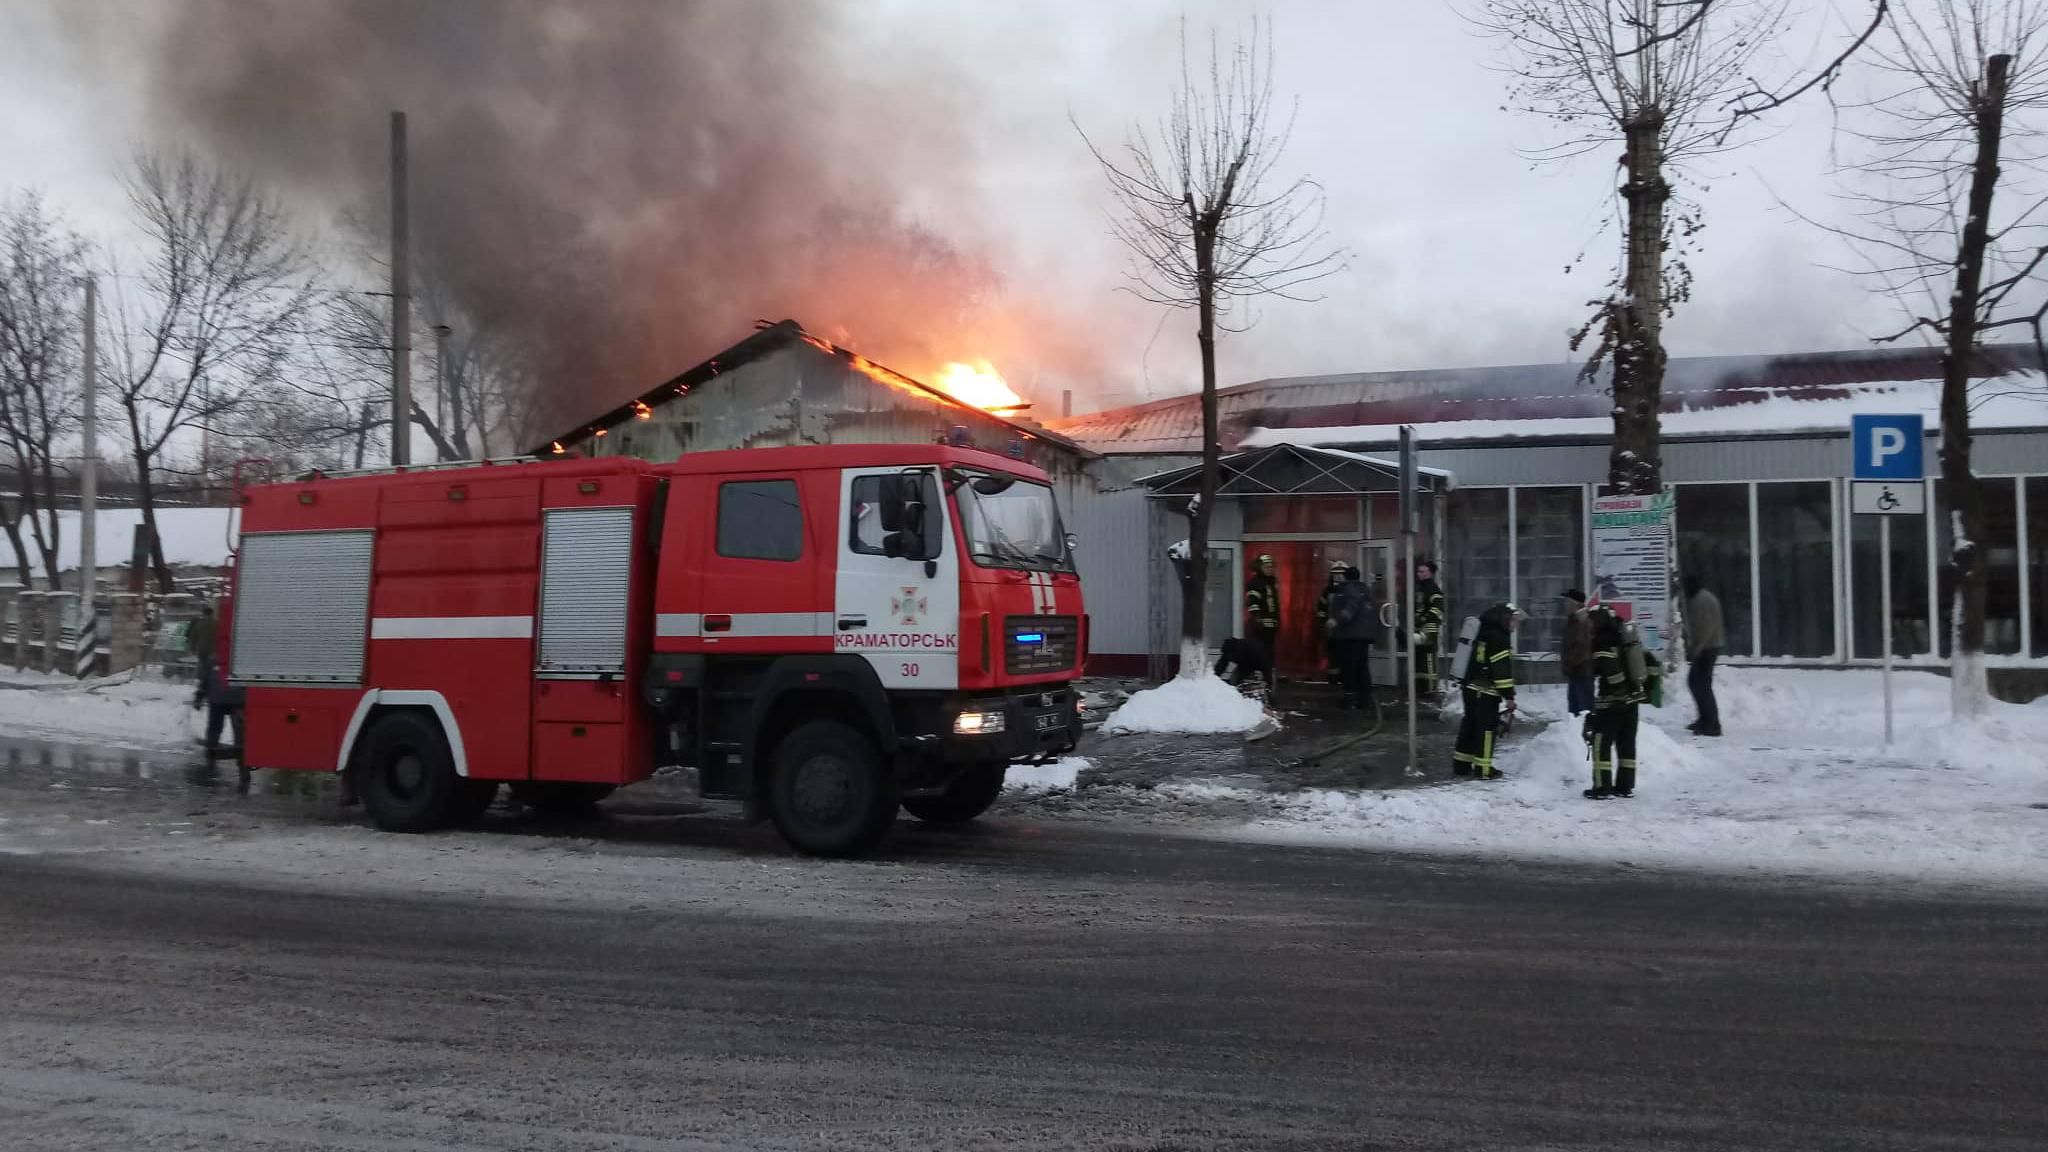 Серйозна пожежа сталася у Краматорську: фото та відео з місця події 